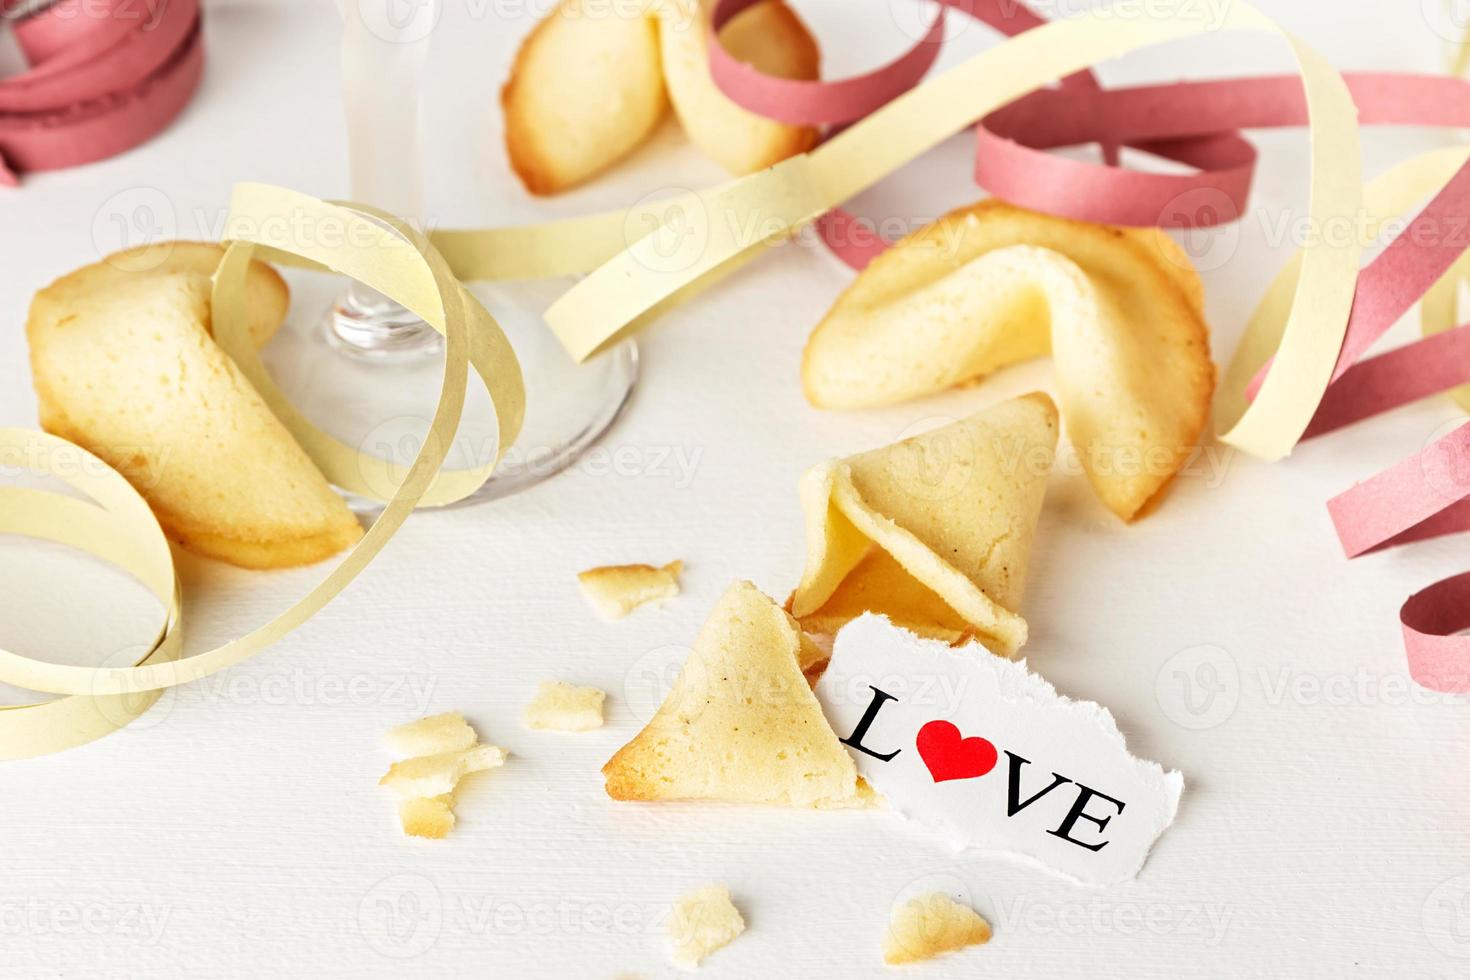 småkakor formad tycka om tortellini med de ord kärlek skriven på en papper och en glas av champagne med streamers.horisontella bild. foto